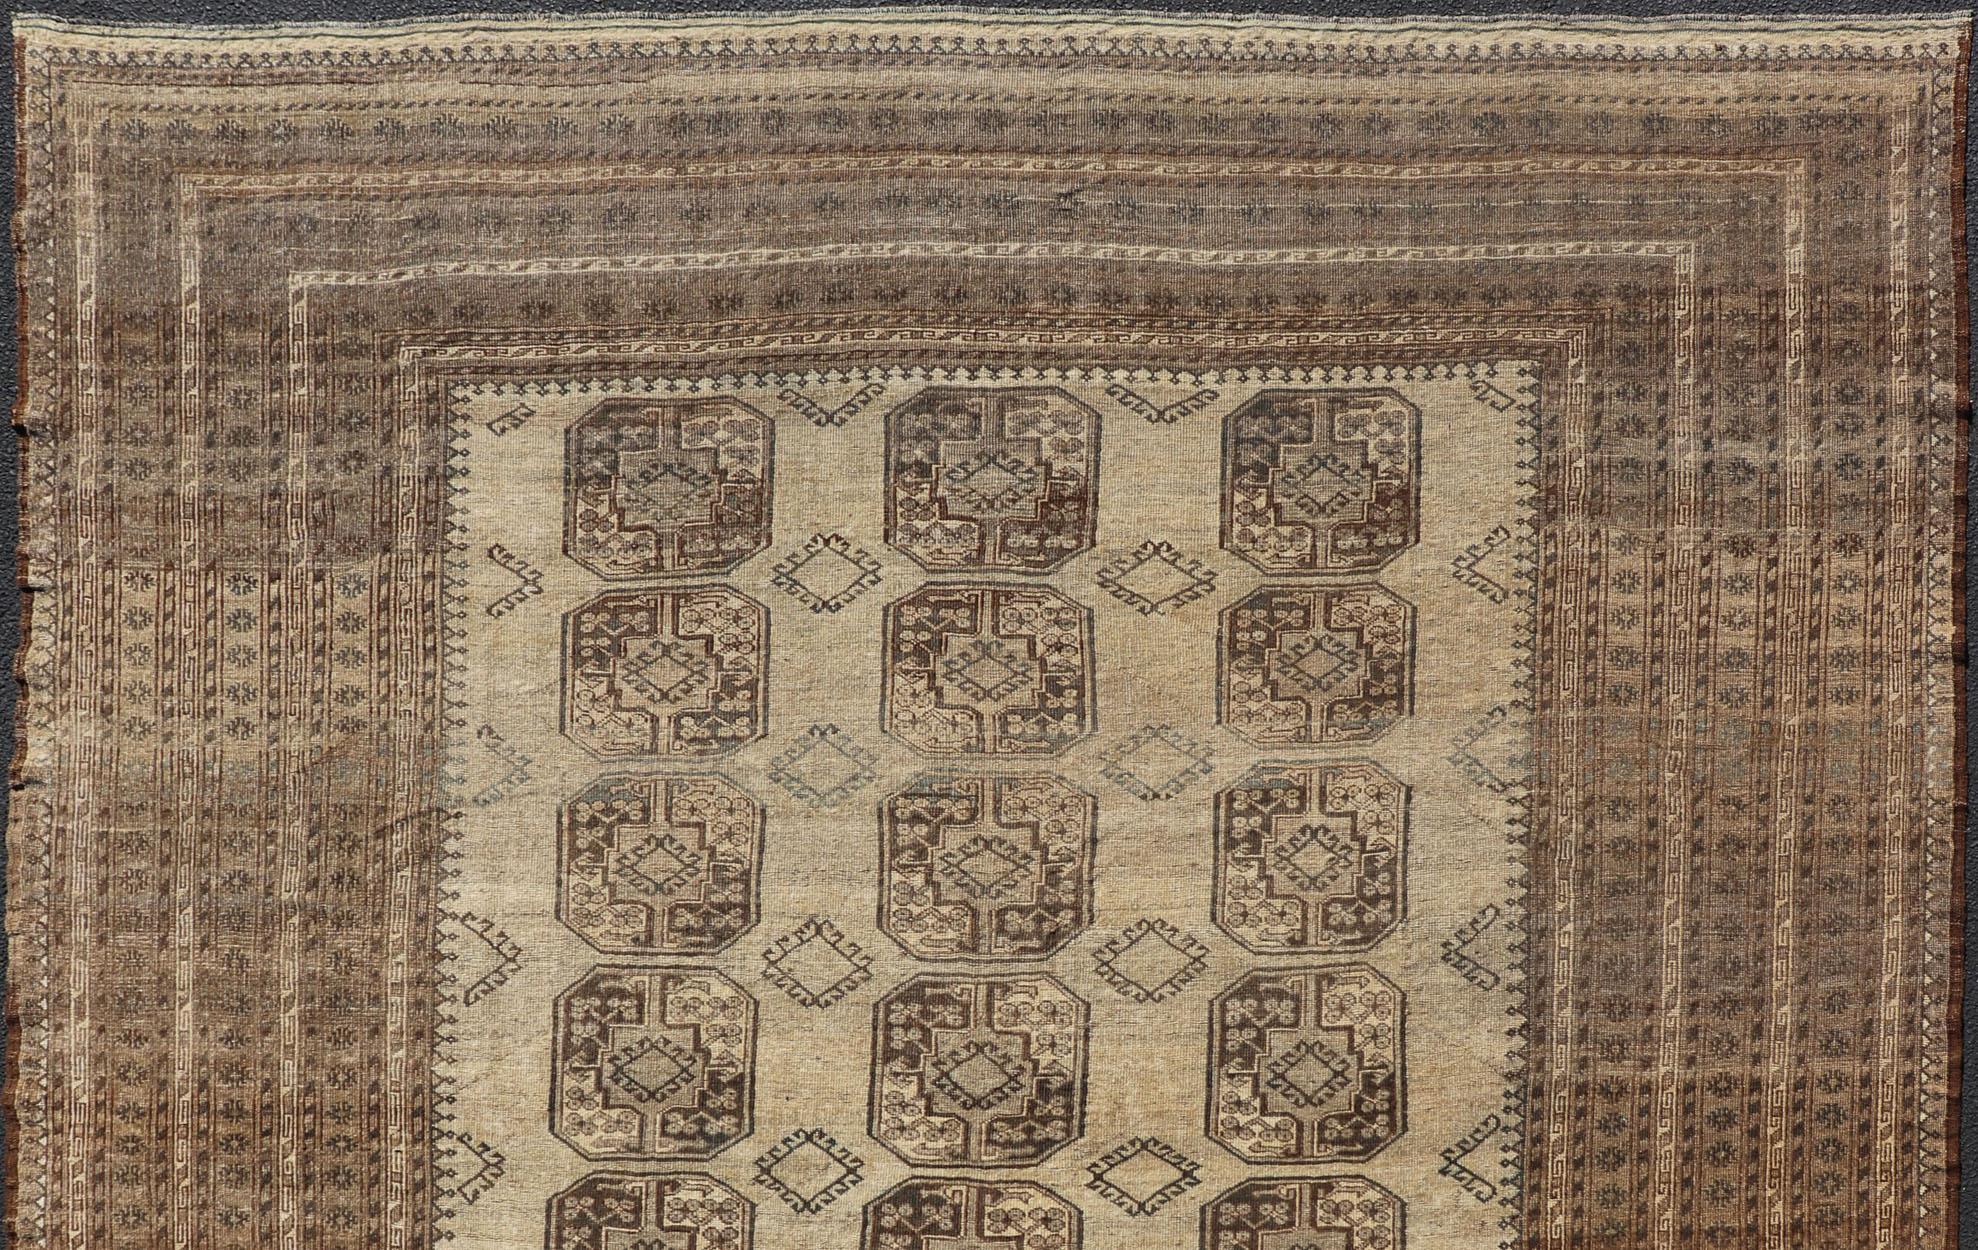 Ce tapis Ersari de taille carrée a été noué à la main dans la laine la plus fine. Le tapis présente un motif Gul sous-géométrique répétitif sur toute la surface du tapis, entouré d'une bordure complémentaire à plusieurs niveaux, représentant de